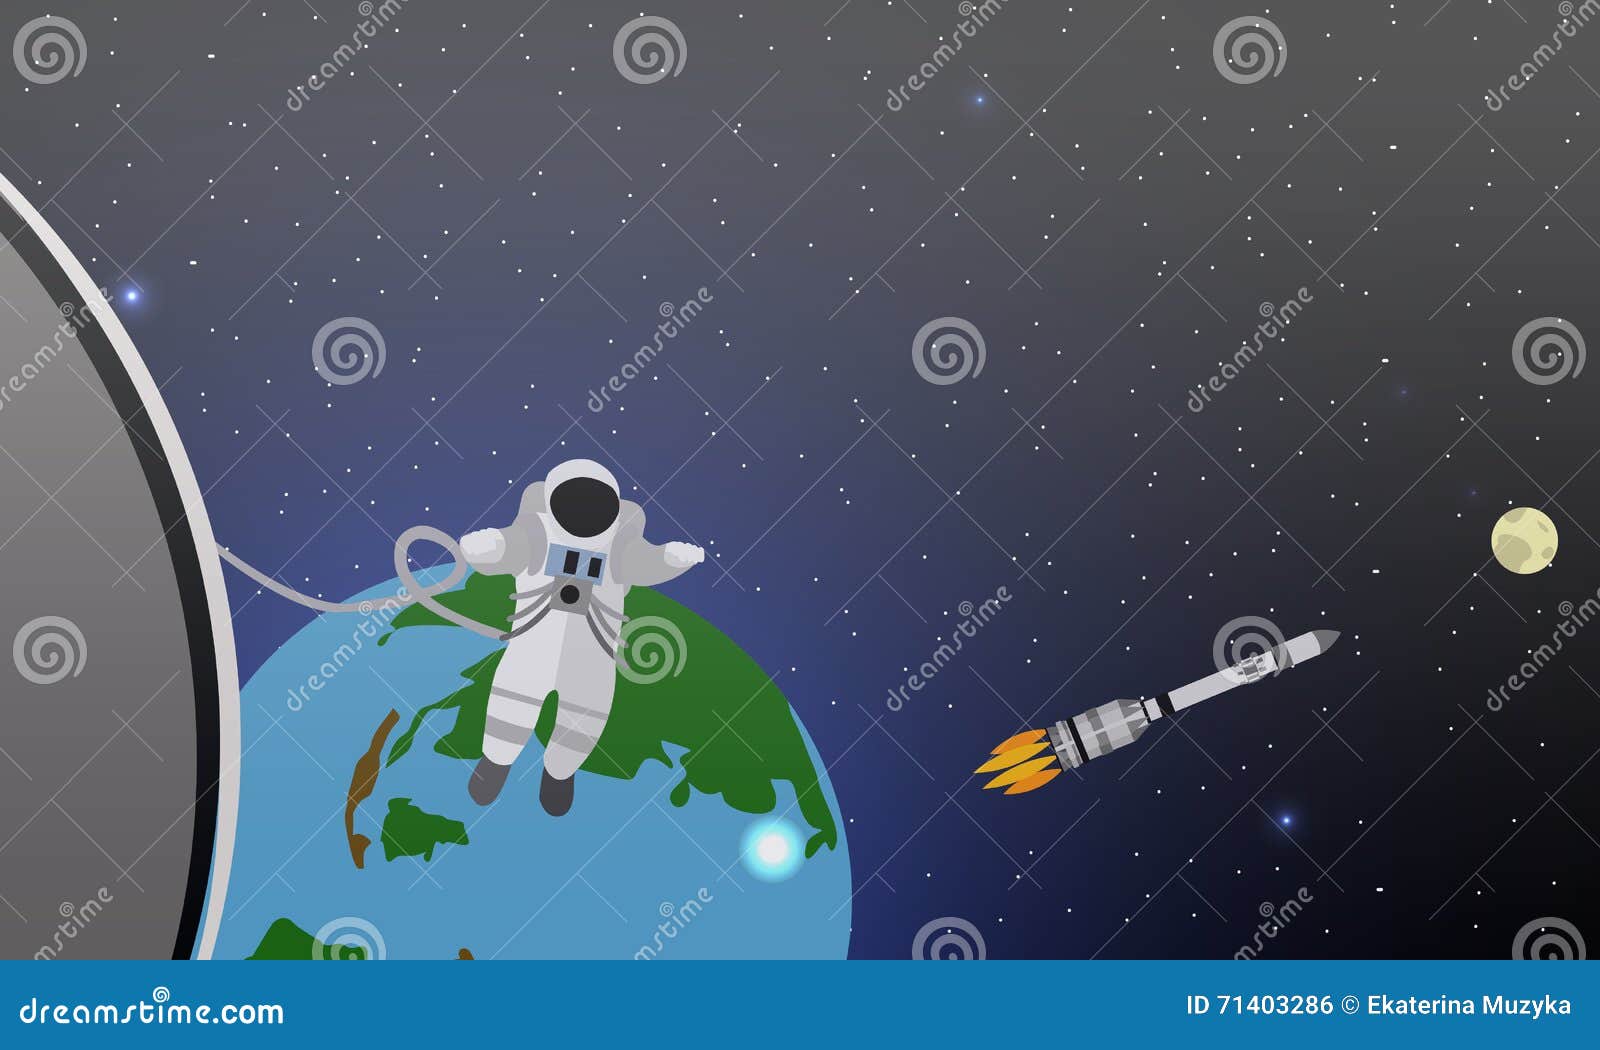 Я ракета полетела в космос с ускорением. Космонавт улетает в космос на ракете. Космонавты идут к ракете. Гравитация космонавт иллюстрация. Космонавт летит в ракете вектор.